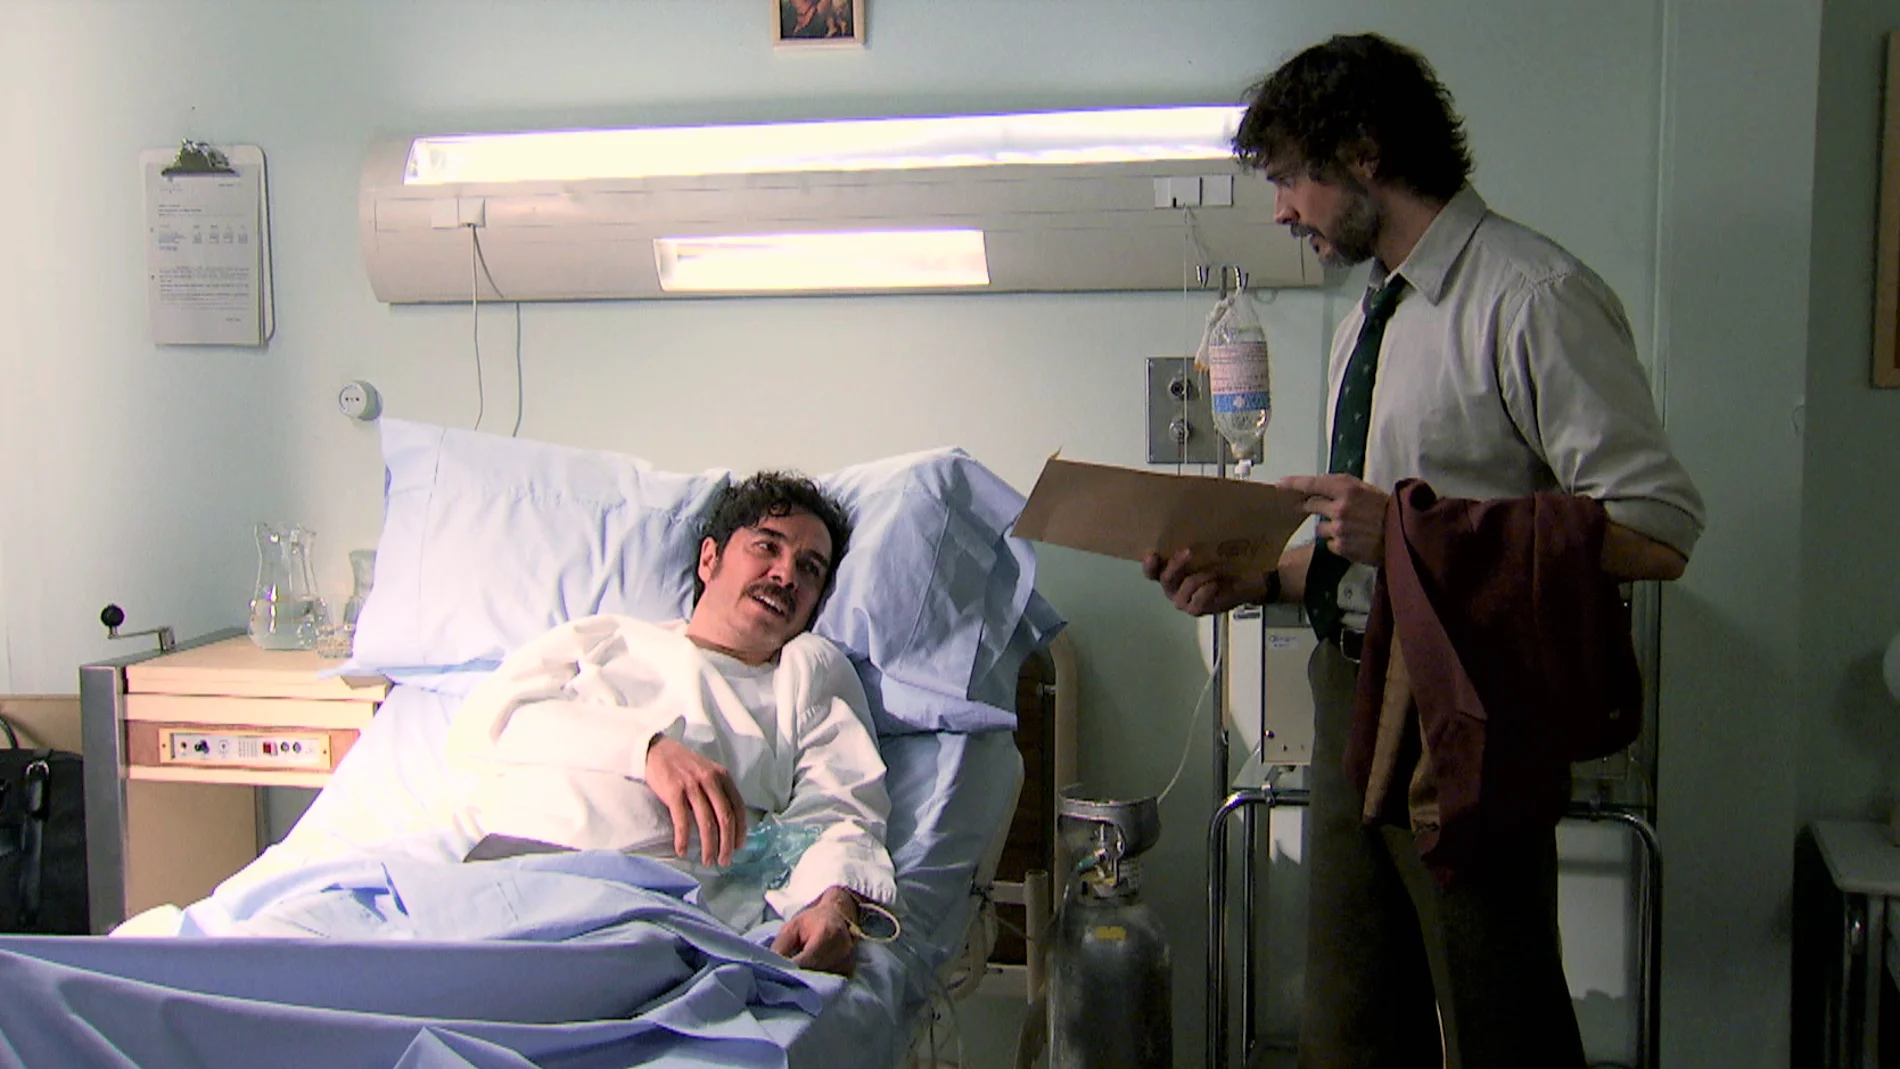 Guillermo visita a Ordóñez al hospital y recibe por su parte un imprevisto documento.